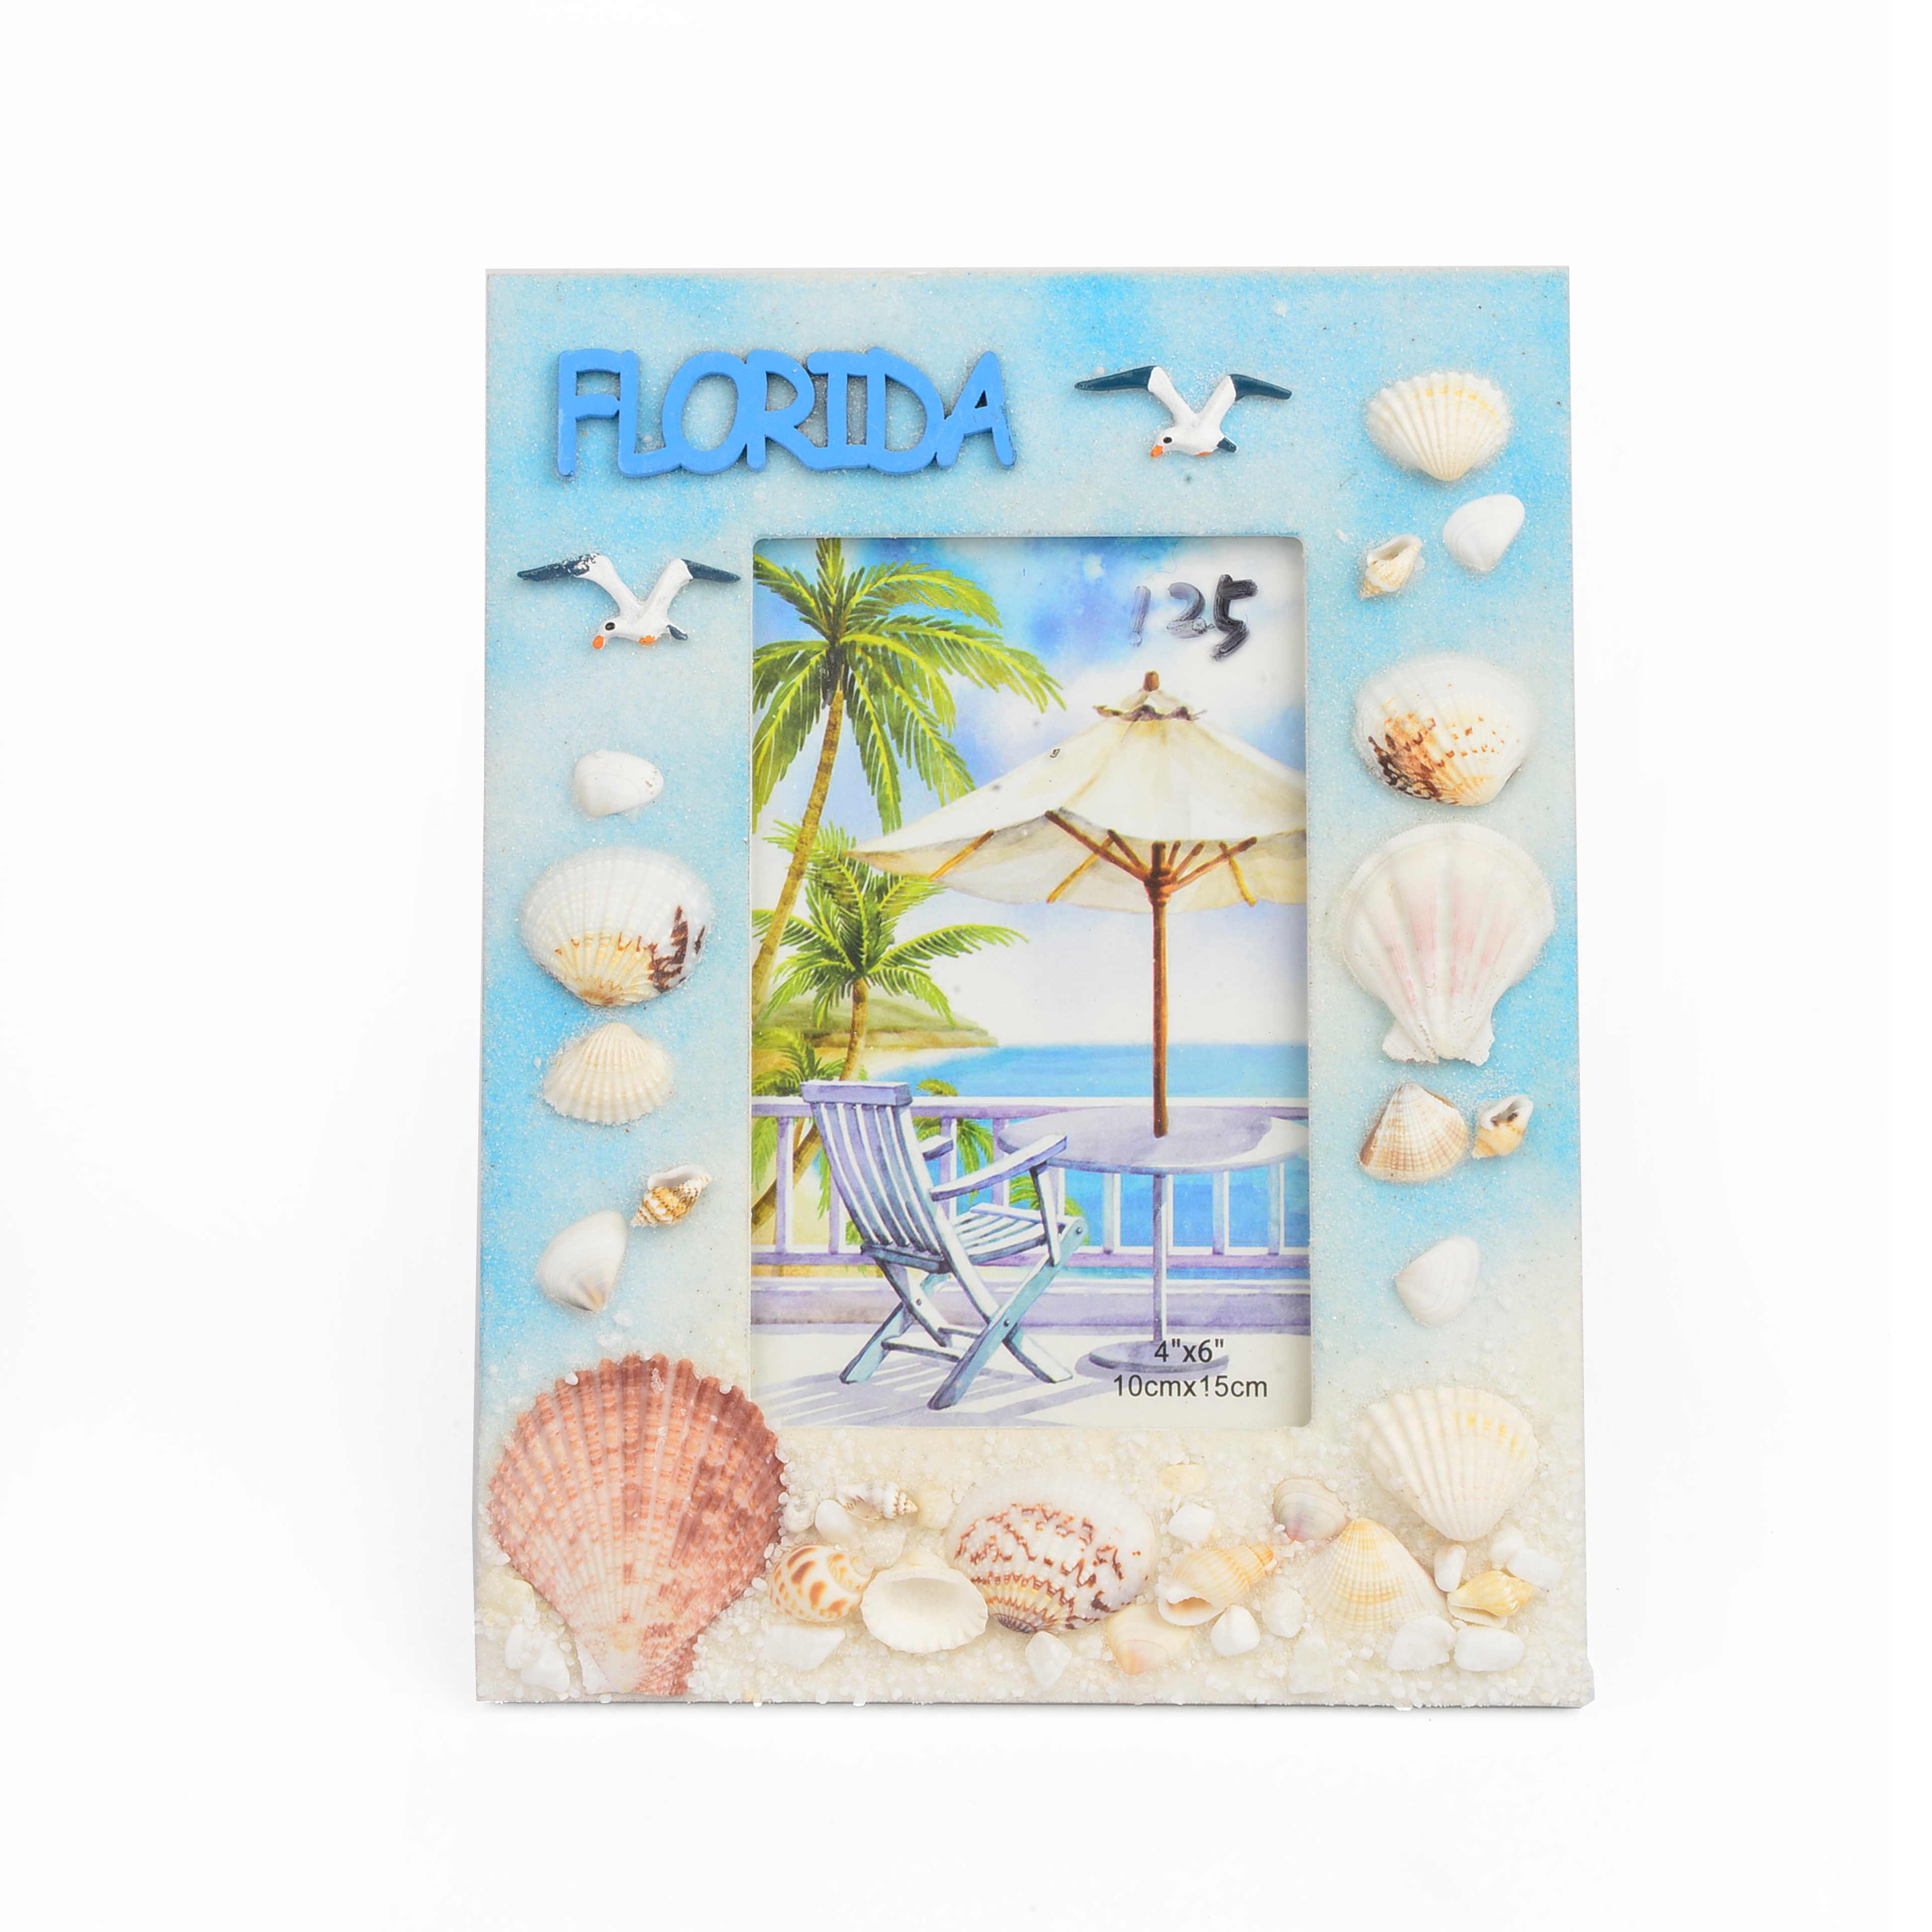 丽飞海洋系列旅游创意工艺品海滩贝壳海螺珊瑚工艺相框0008